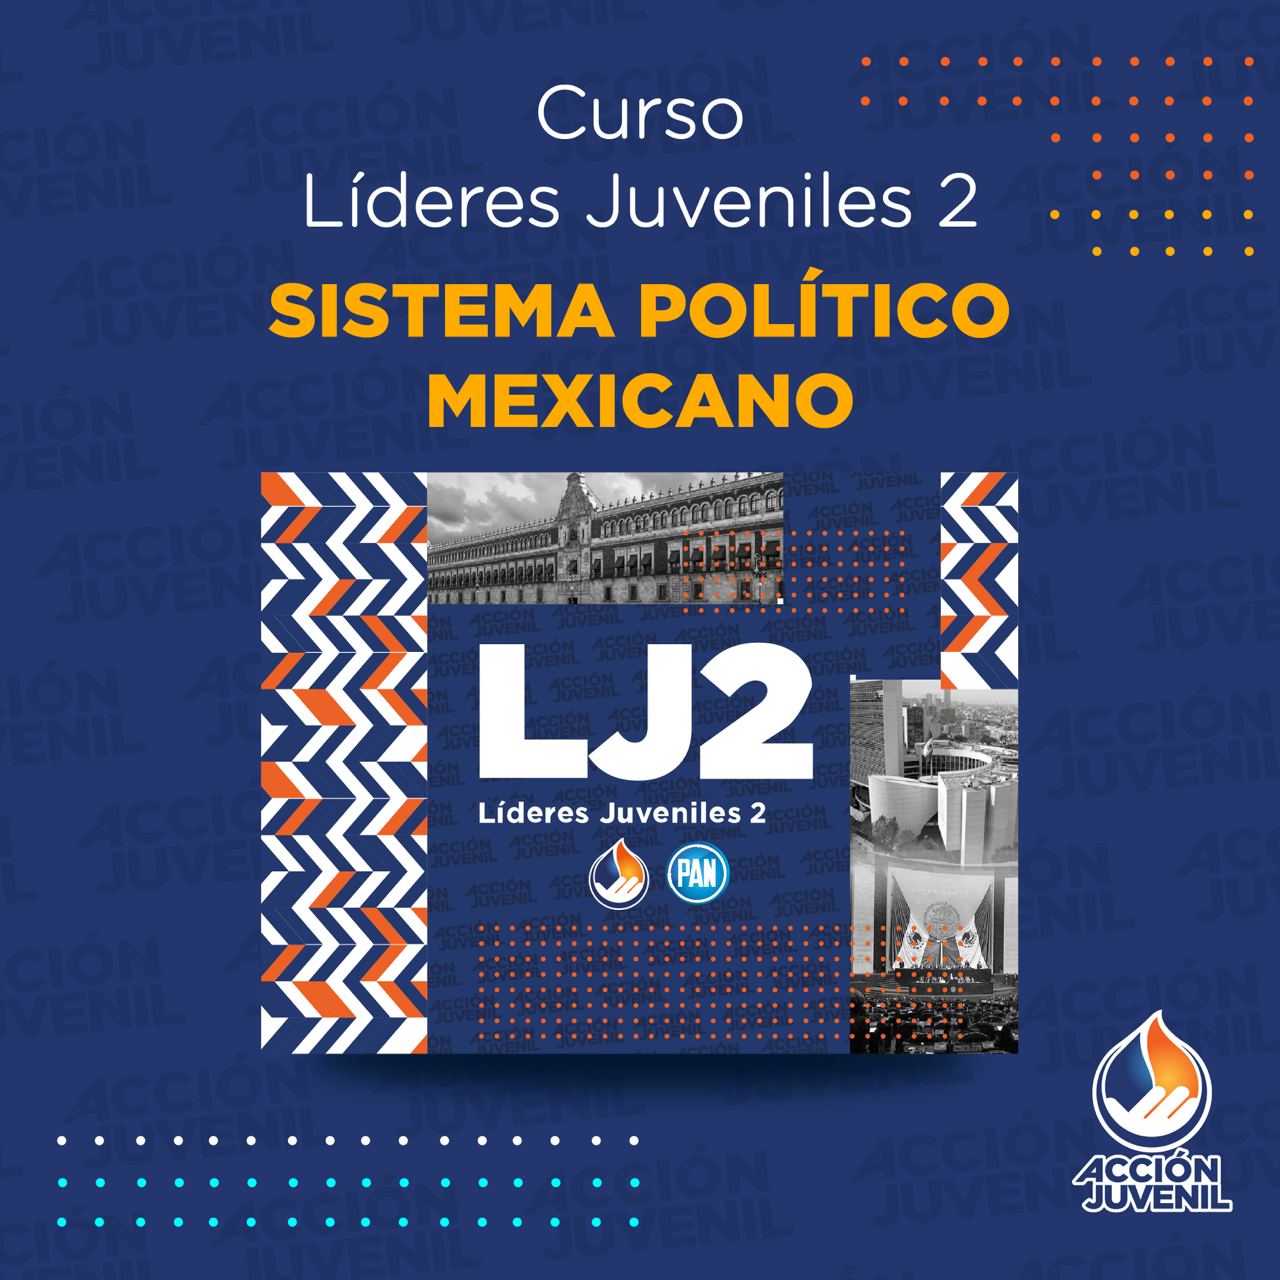 Curso Líderes Juveniles 2 Sistema Político Mexicano Metepec, MEX 29/10/22